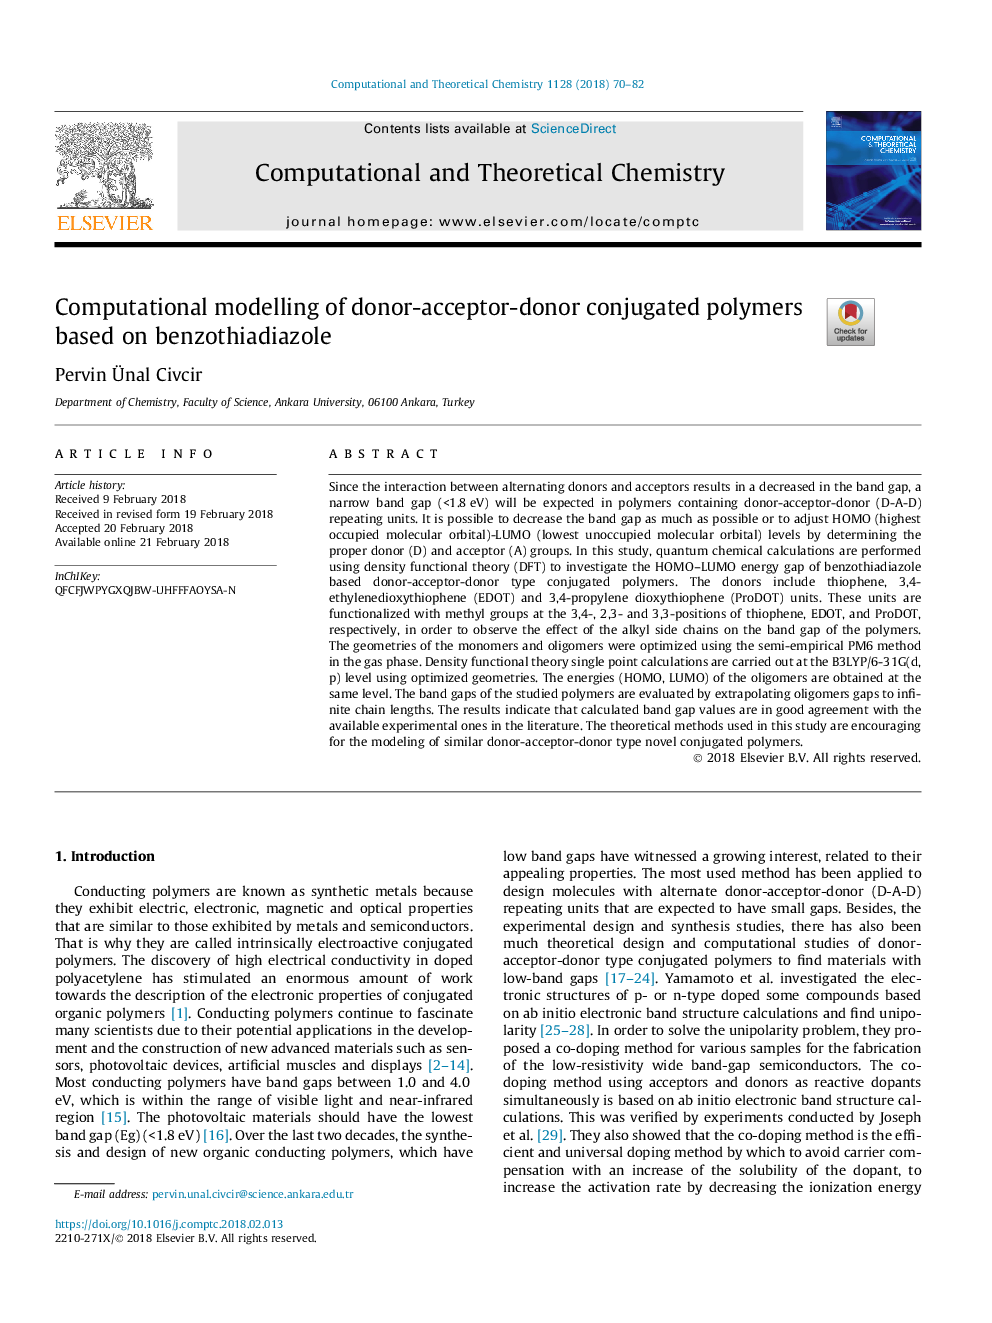 مدل سازی محاسباتی از پلیمرهای کنجوج کننده اهدا کننده-گیرنده-گیرنده-دریافت کننده بر اساس بنزوتی دی دیازول 